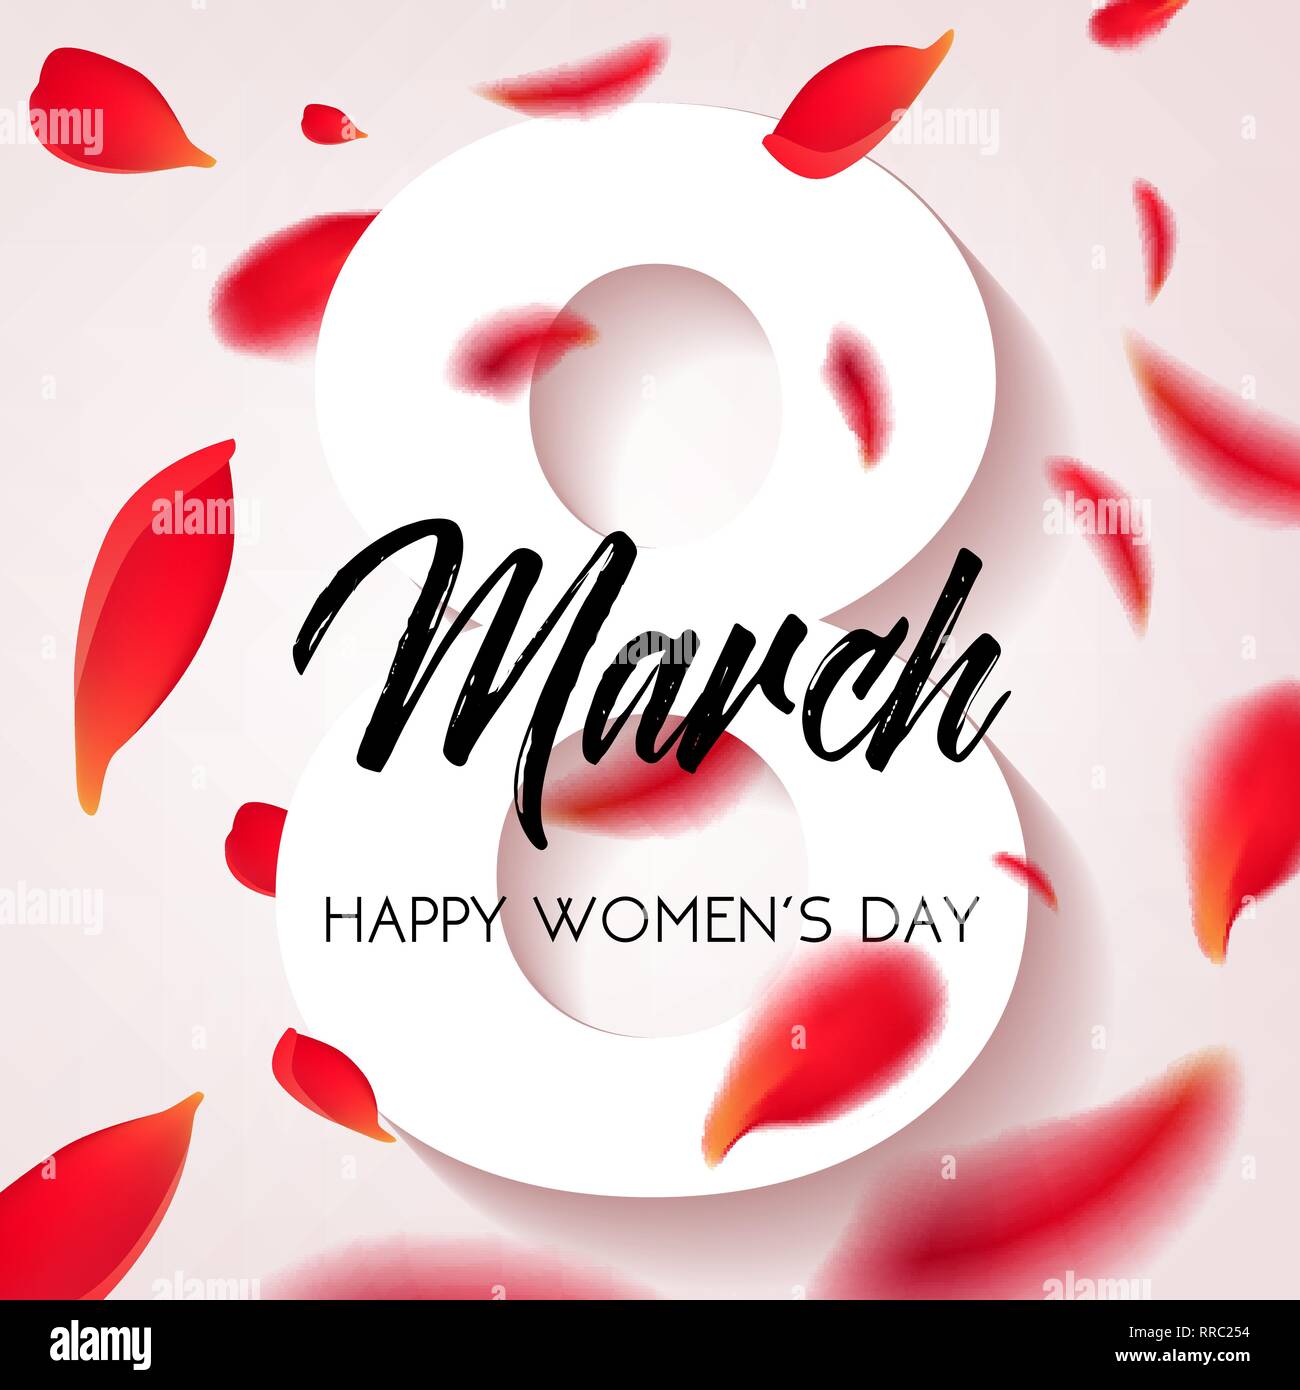 Happy Tag der Frauen - 8. März congratulatory Banner mit Blüten von roten Rosen auf einem weißen Hintergrund. Vector Illustration. Stock Vektor